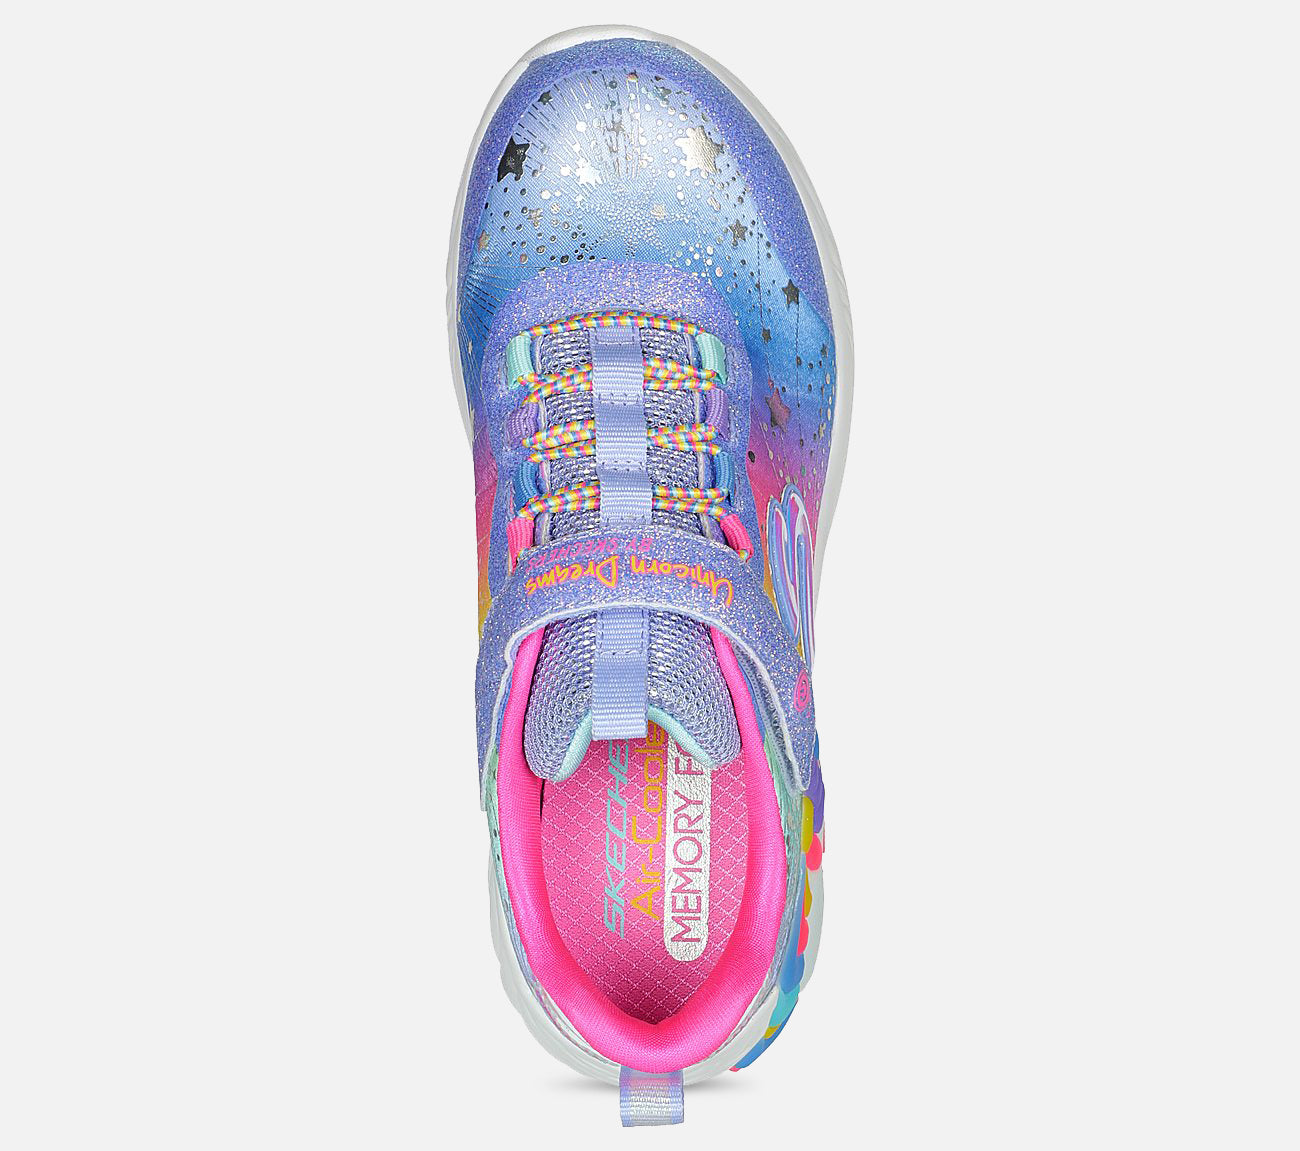 S-Lights: Unicorn Dreams Shoe Skechers